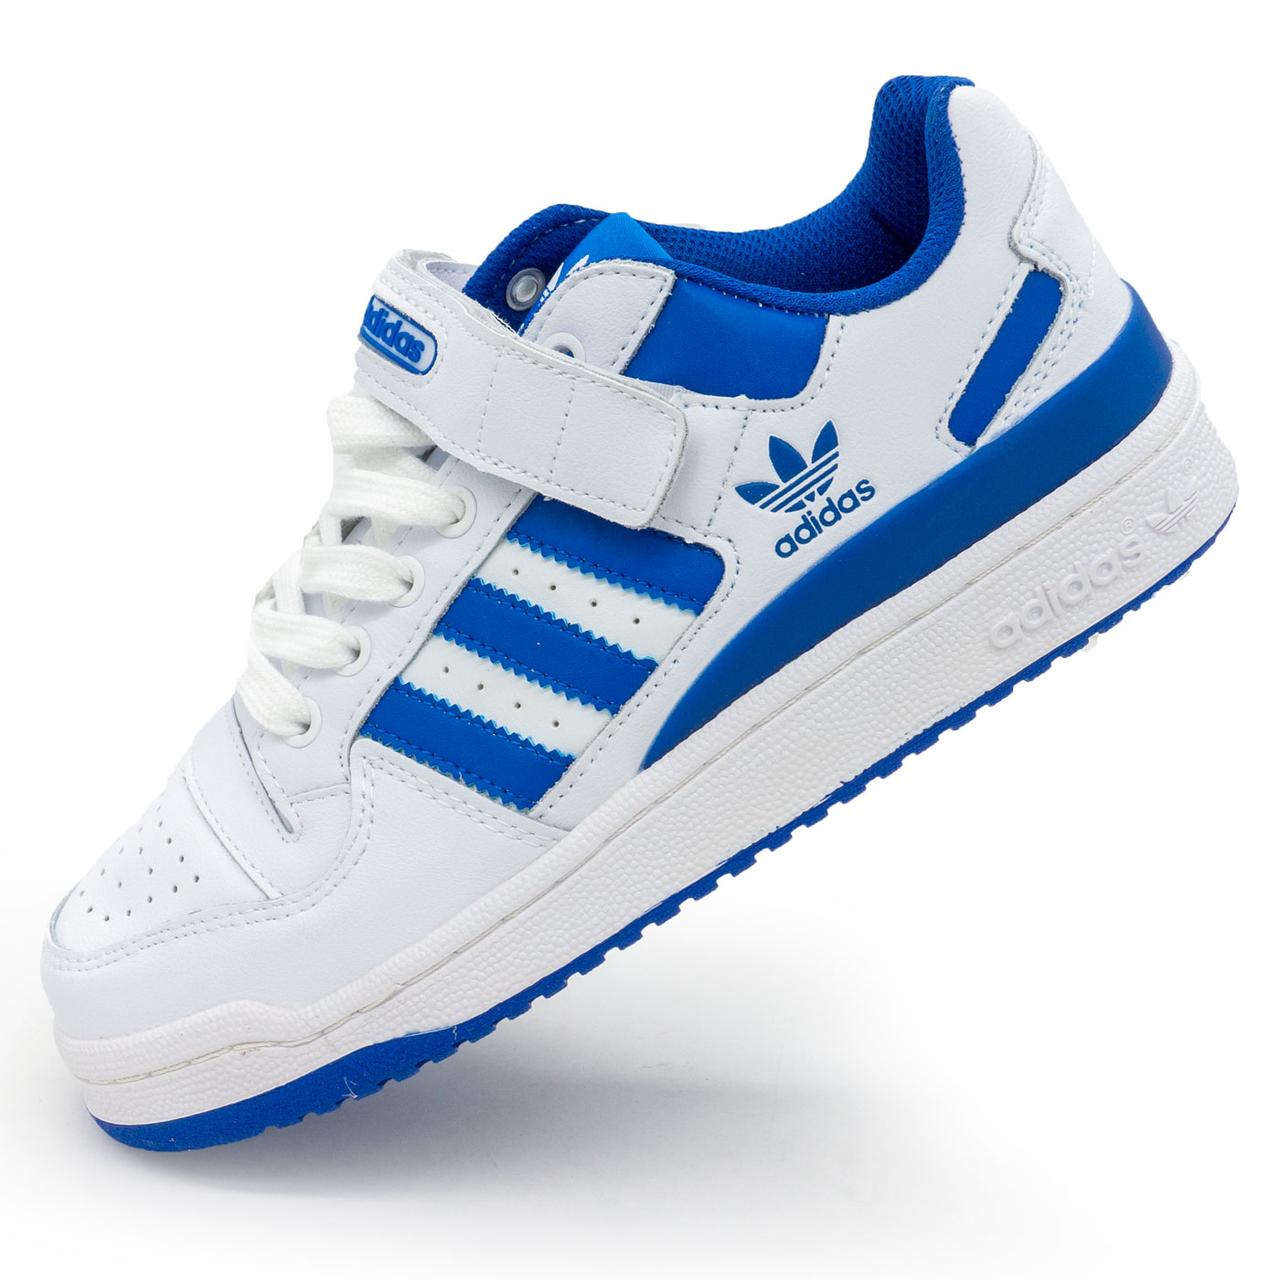 Кросівки Adidas  Forum 84 біло-сині 39. Розміри в наявності: 39, 41.